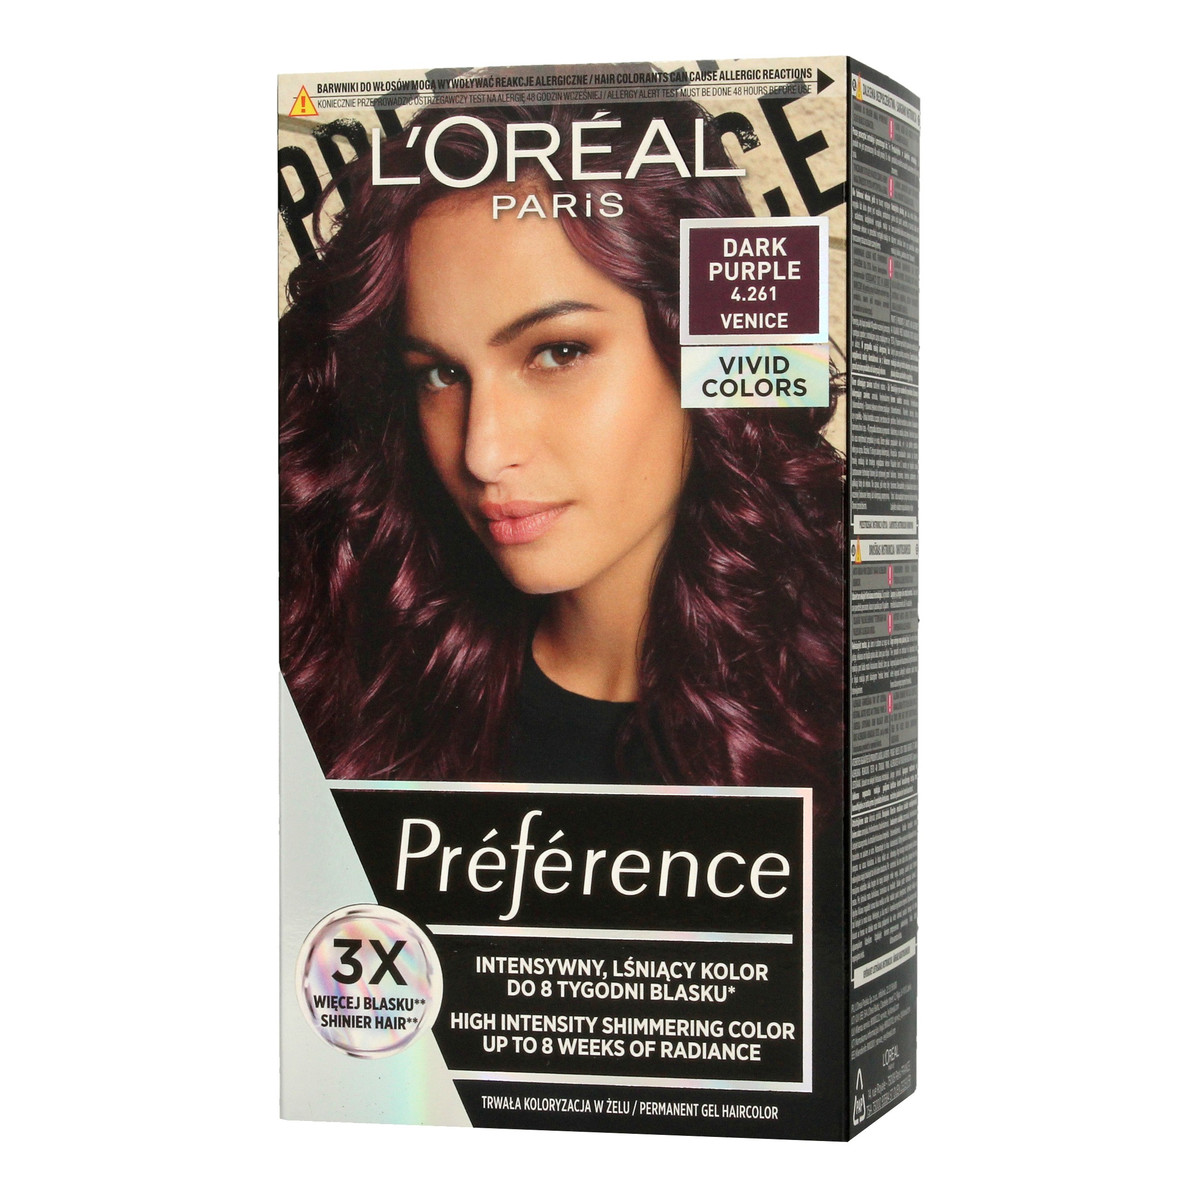 L'Oreal Paris Preference Vivid Colors Farba do włosów nr 4.261 Dark Purple